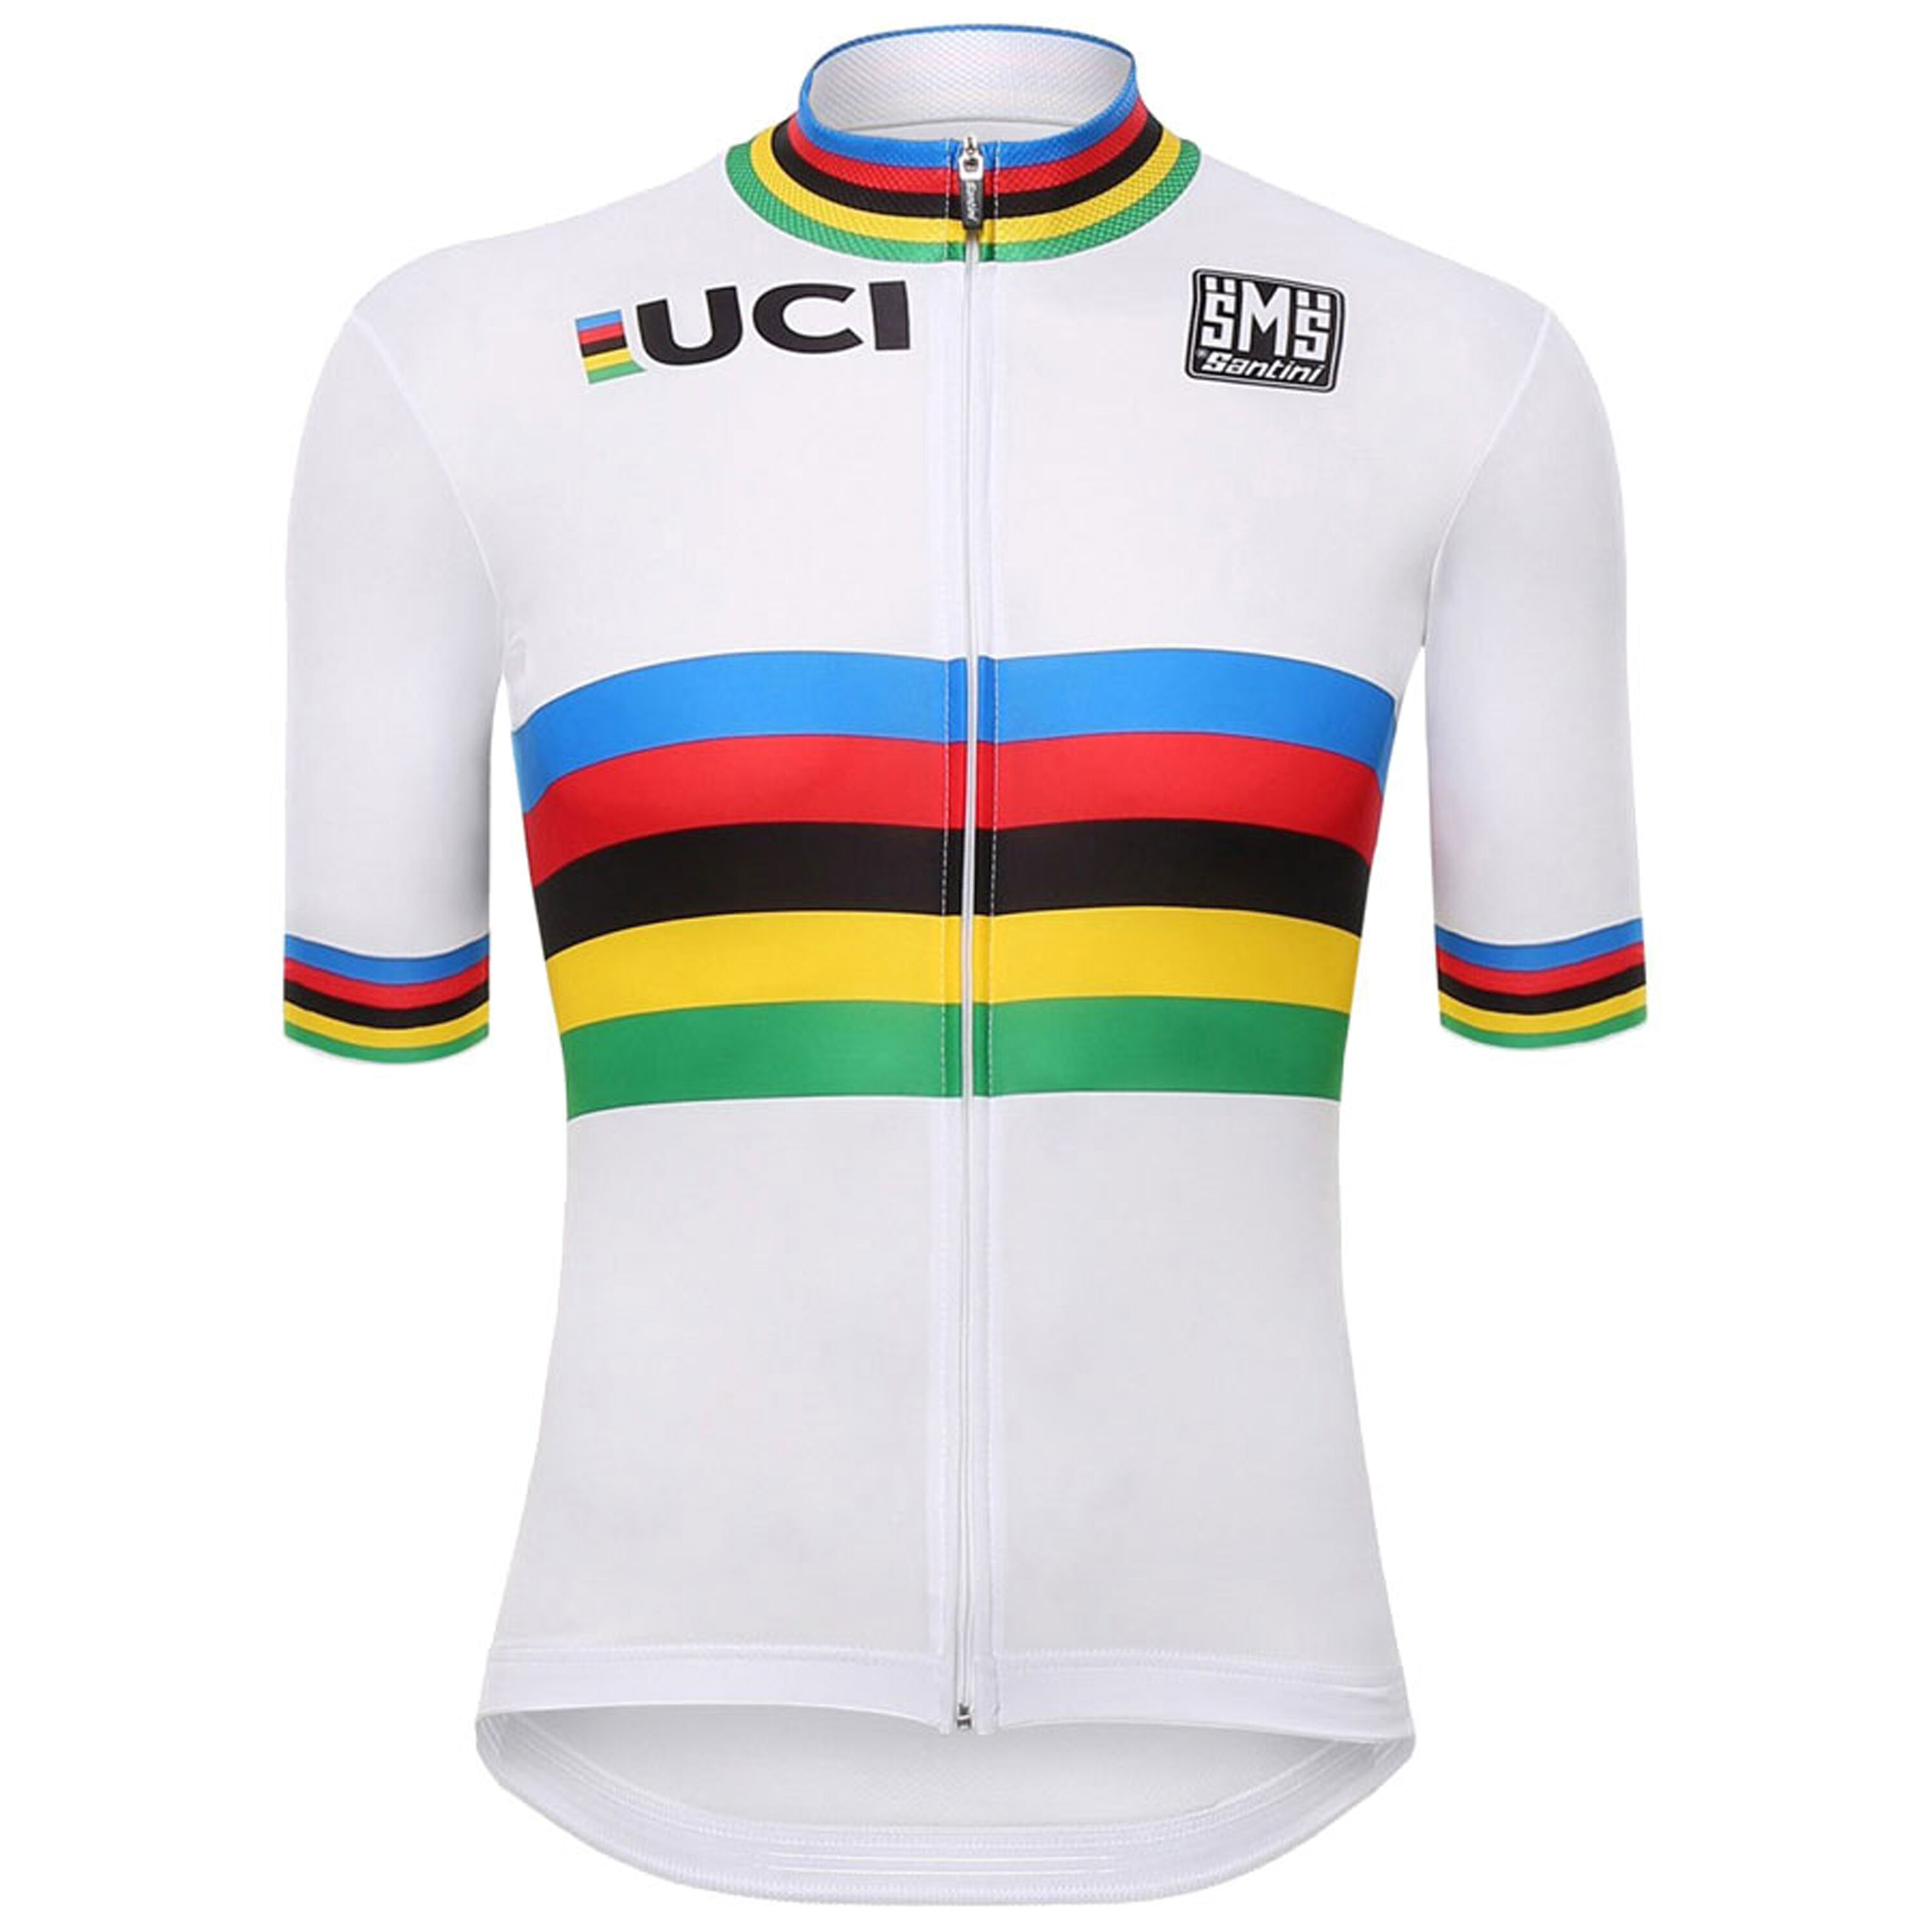 Santini UCI World Champion jersey LordGun online bike store